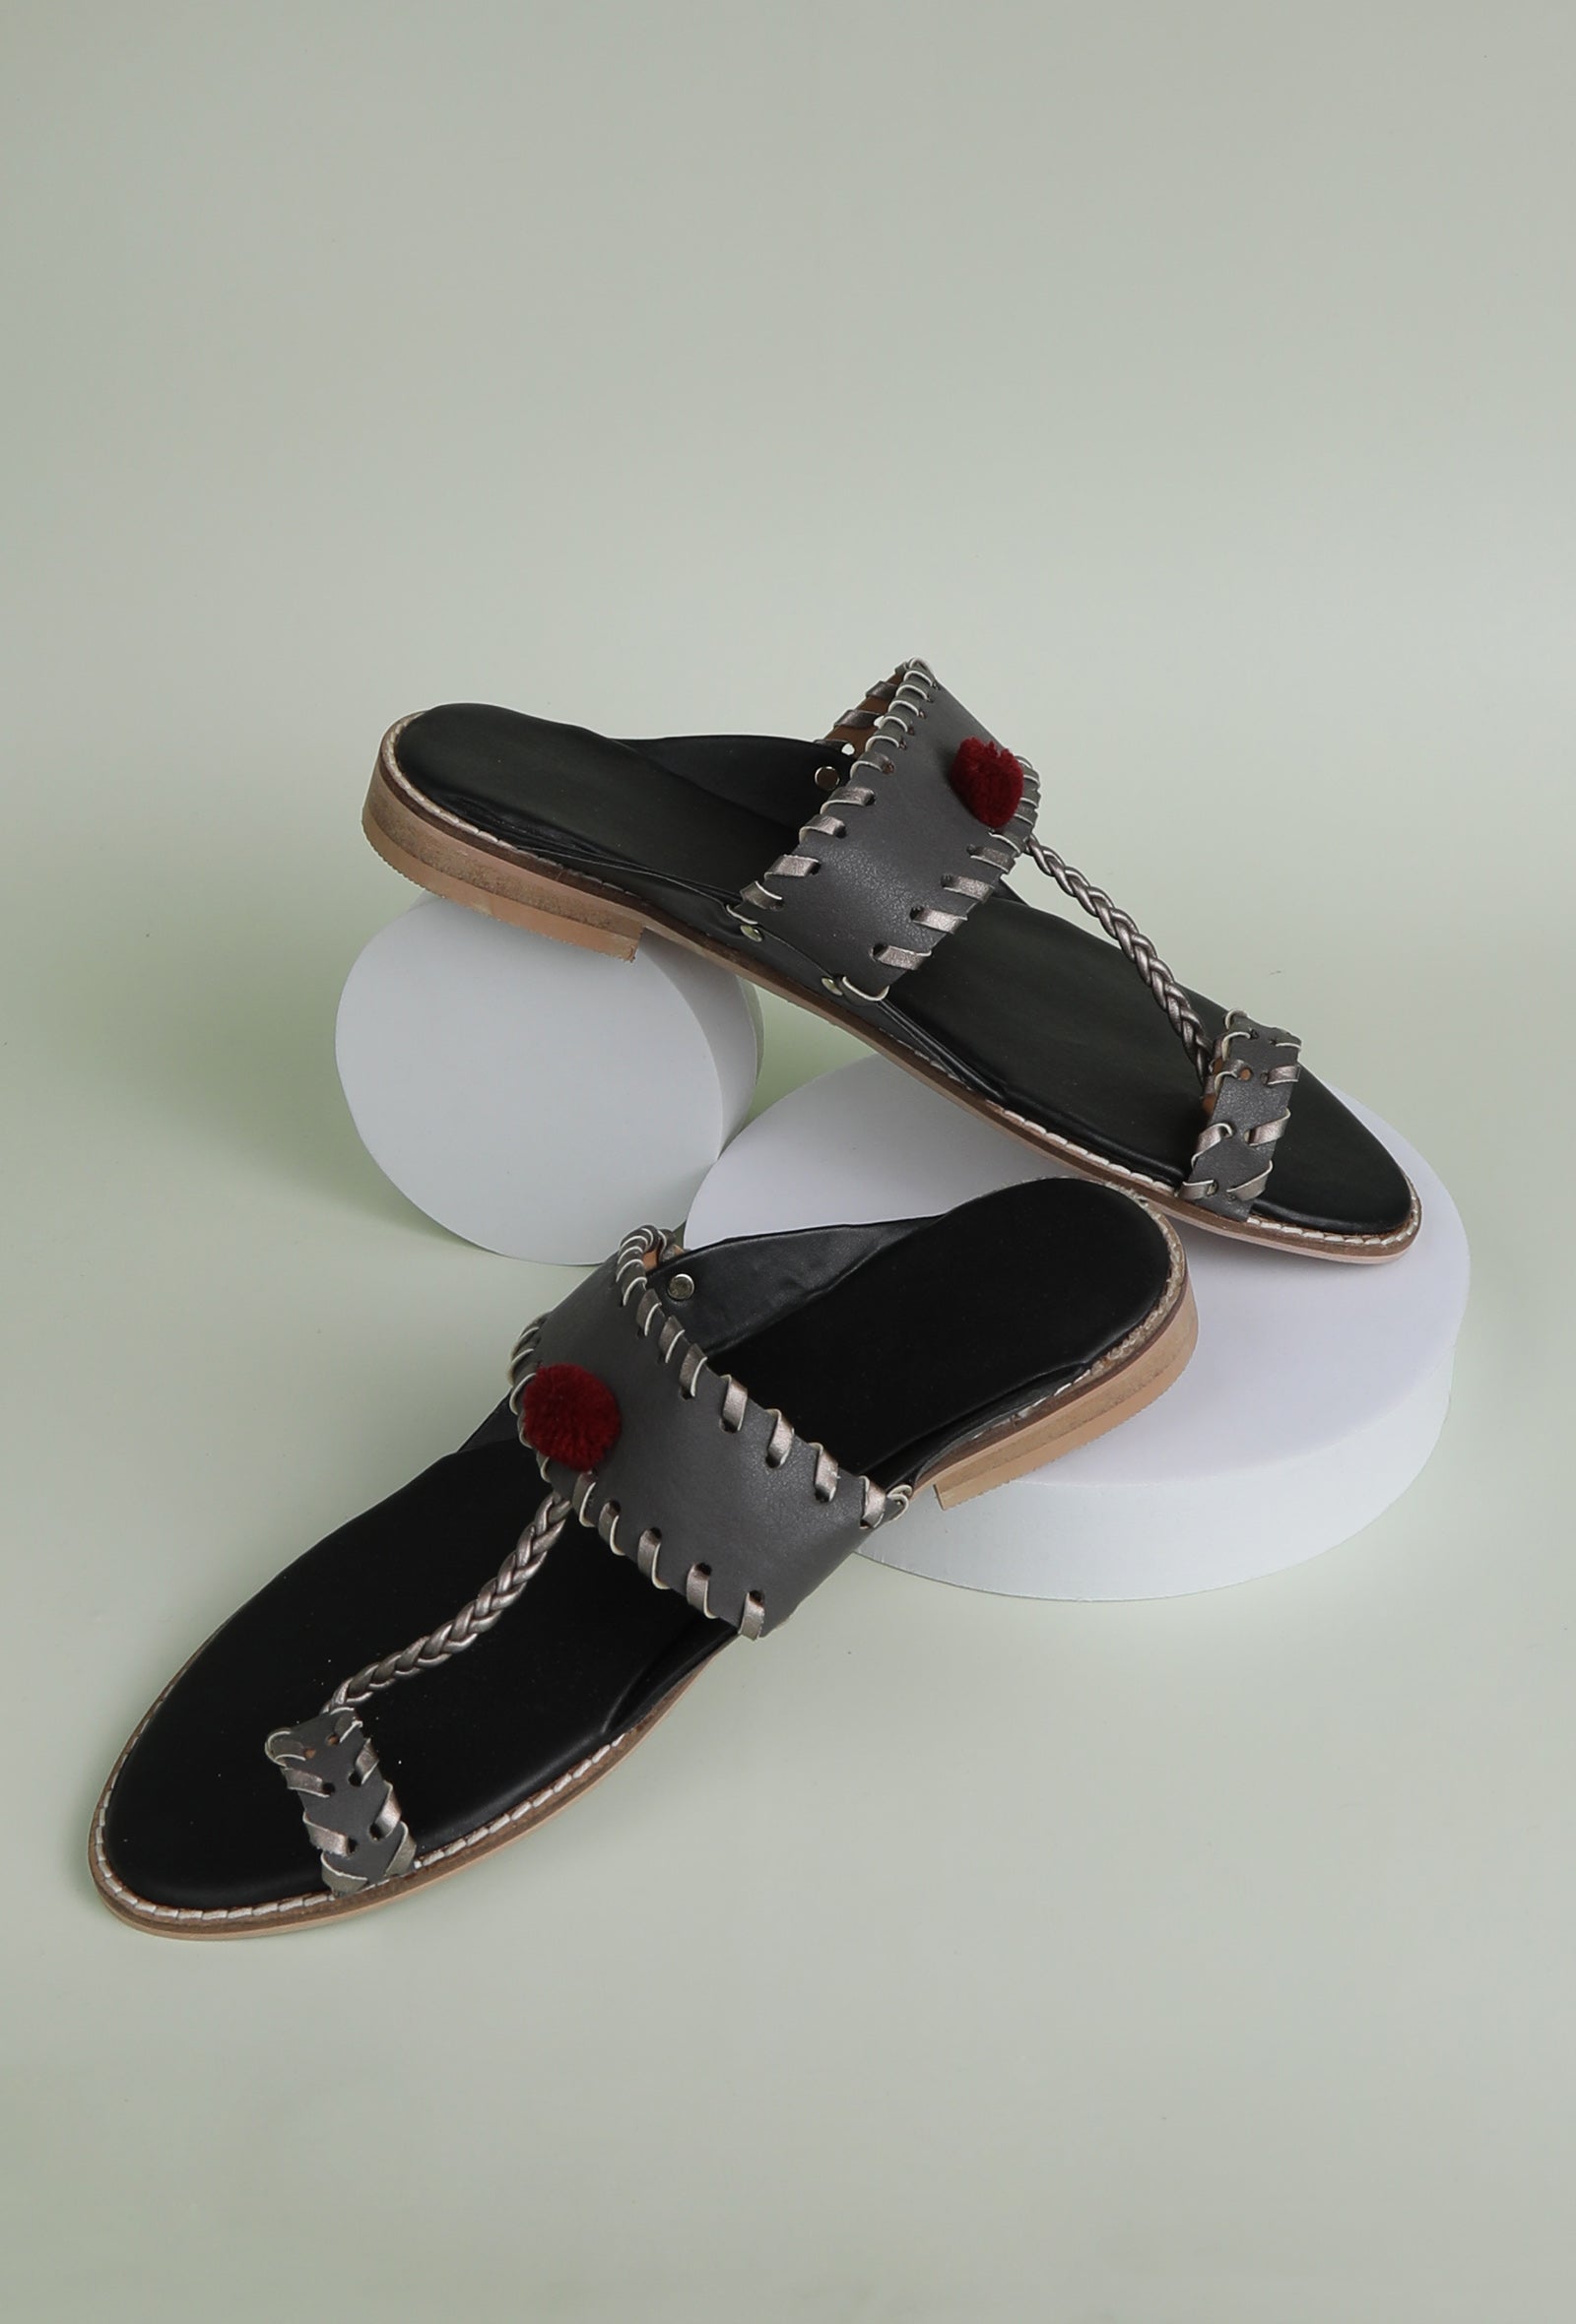 Grey & Silver Pom Pom Cruelty-Free Leather Sandals